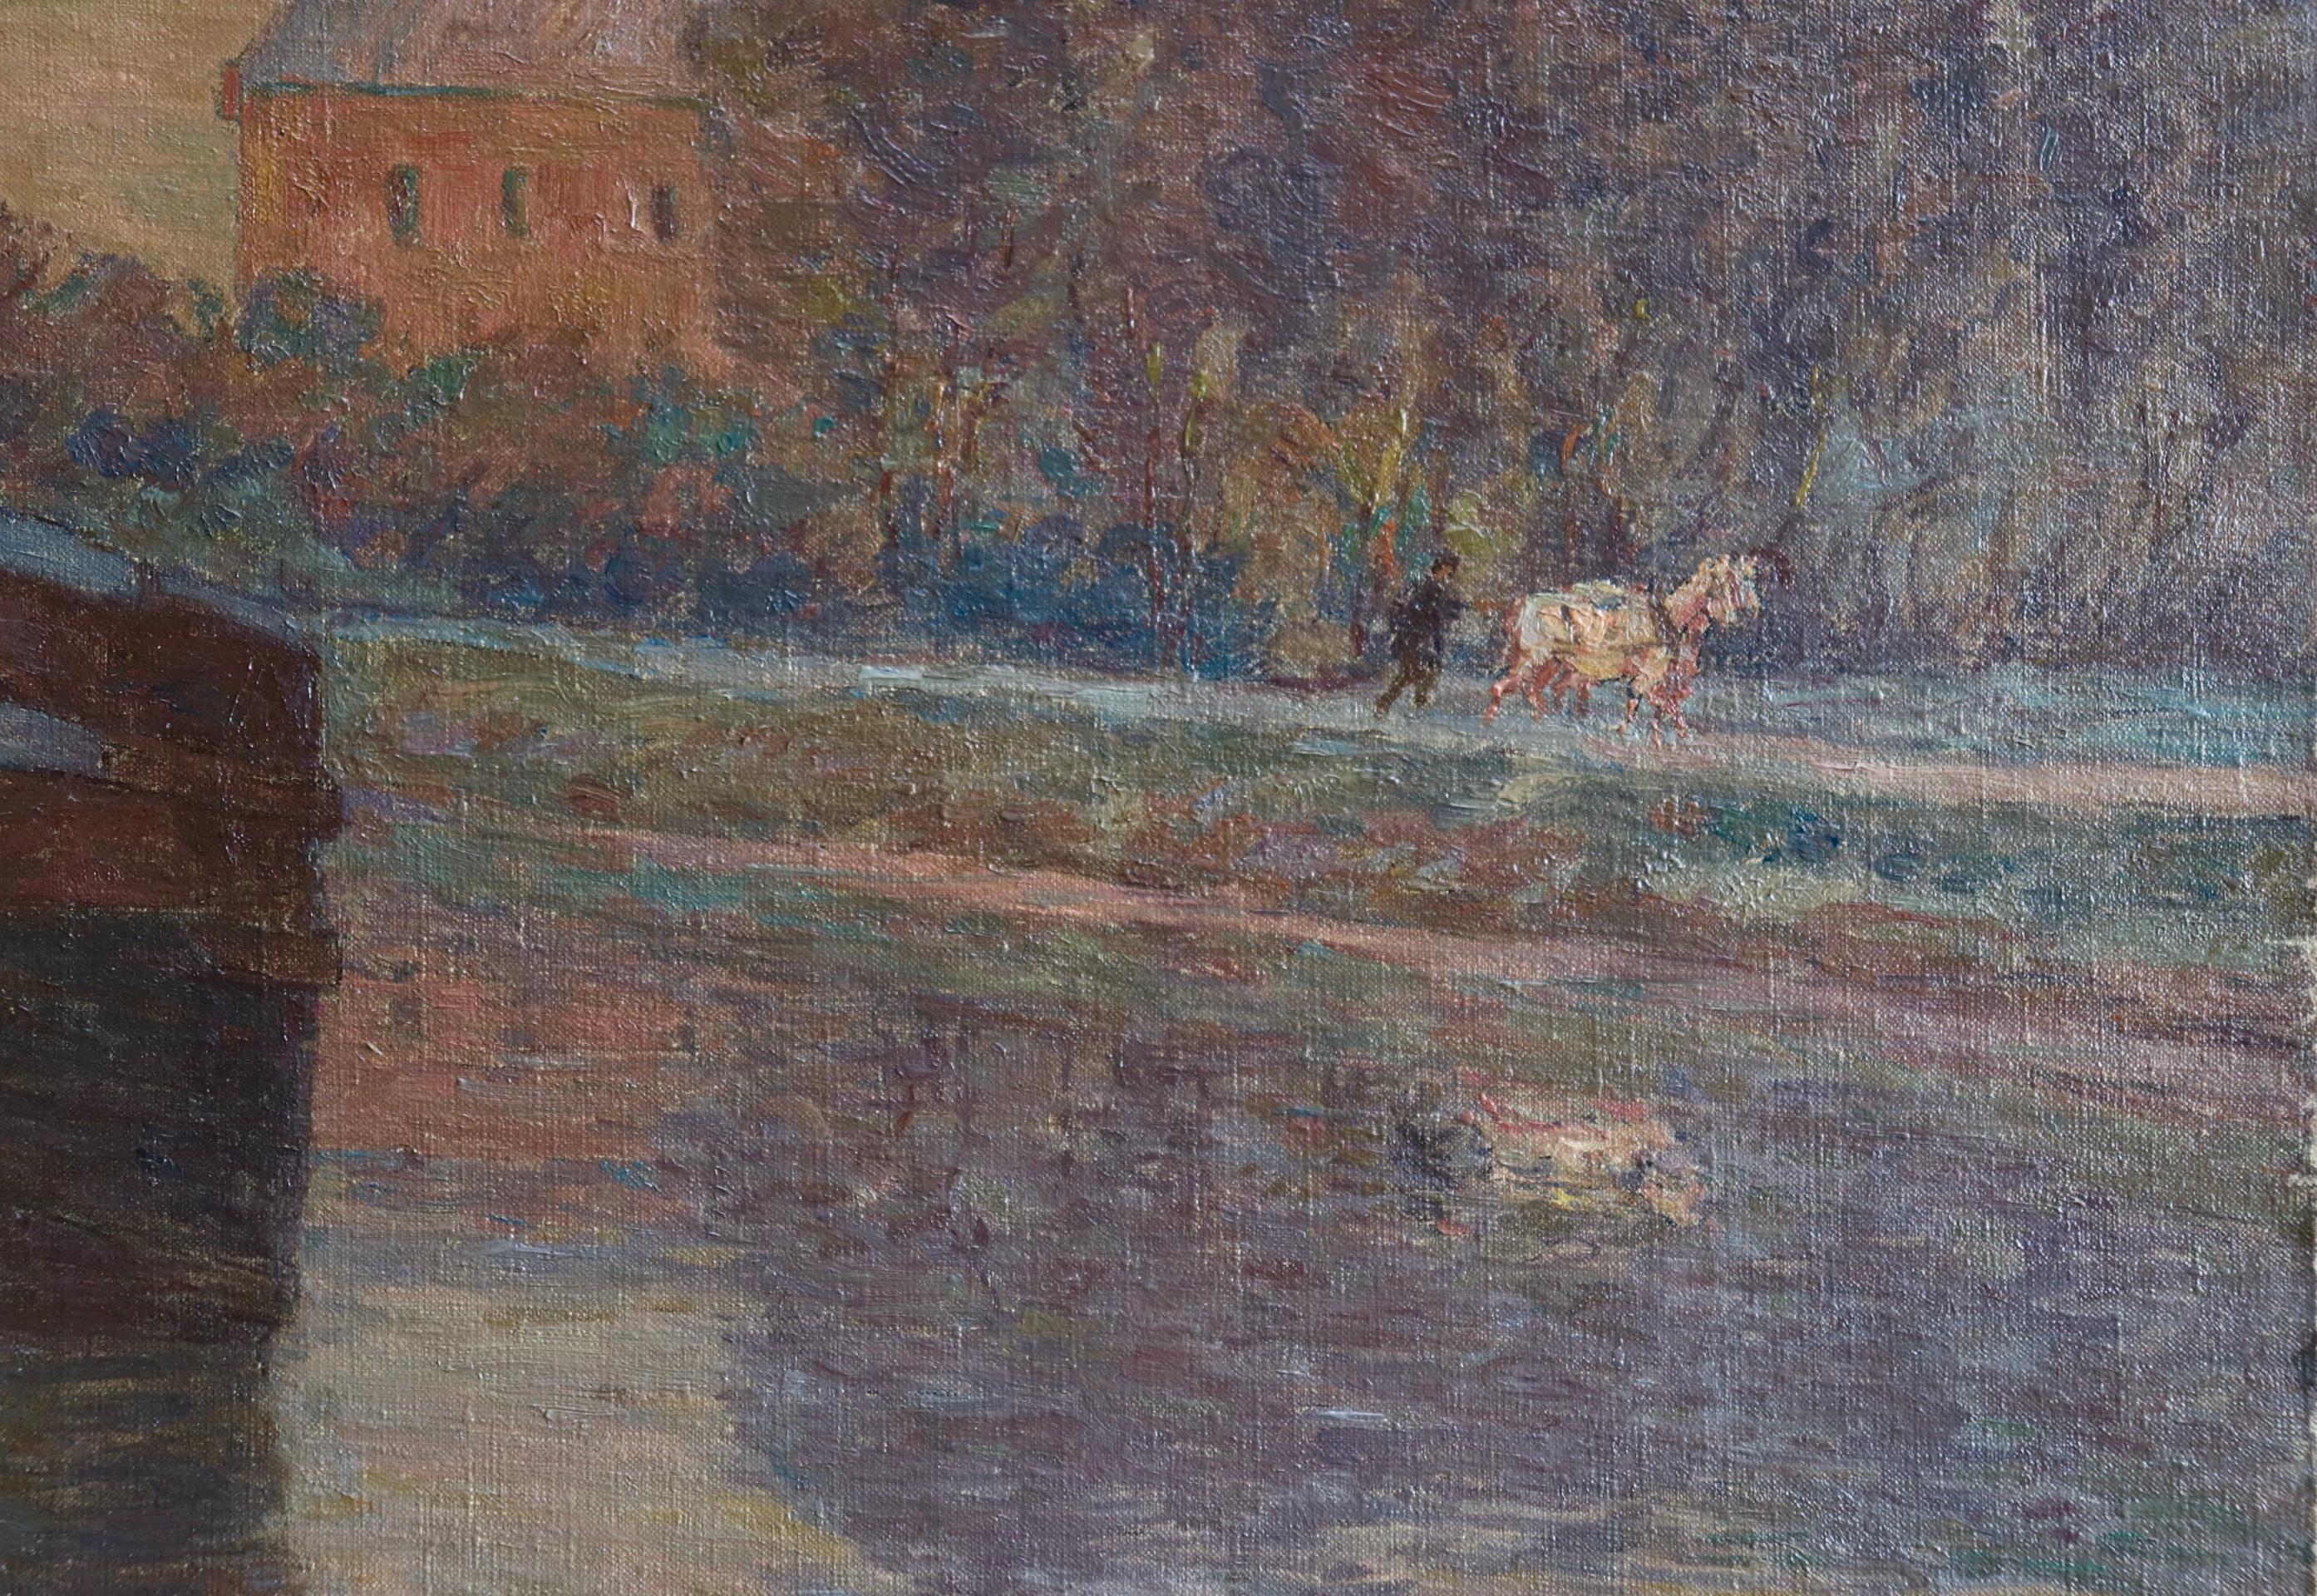 Belandre au Soleil - Matin de Givre - Impressionistisches Ölgemälde, Landschaft von H Duhem (Impressionismus), Painting, von Henri Duhem